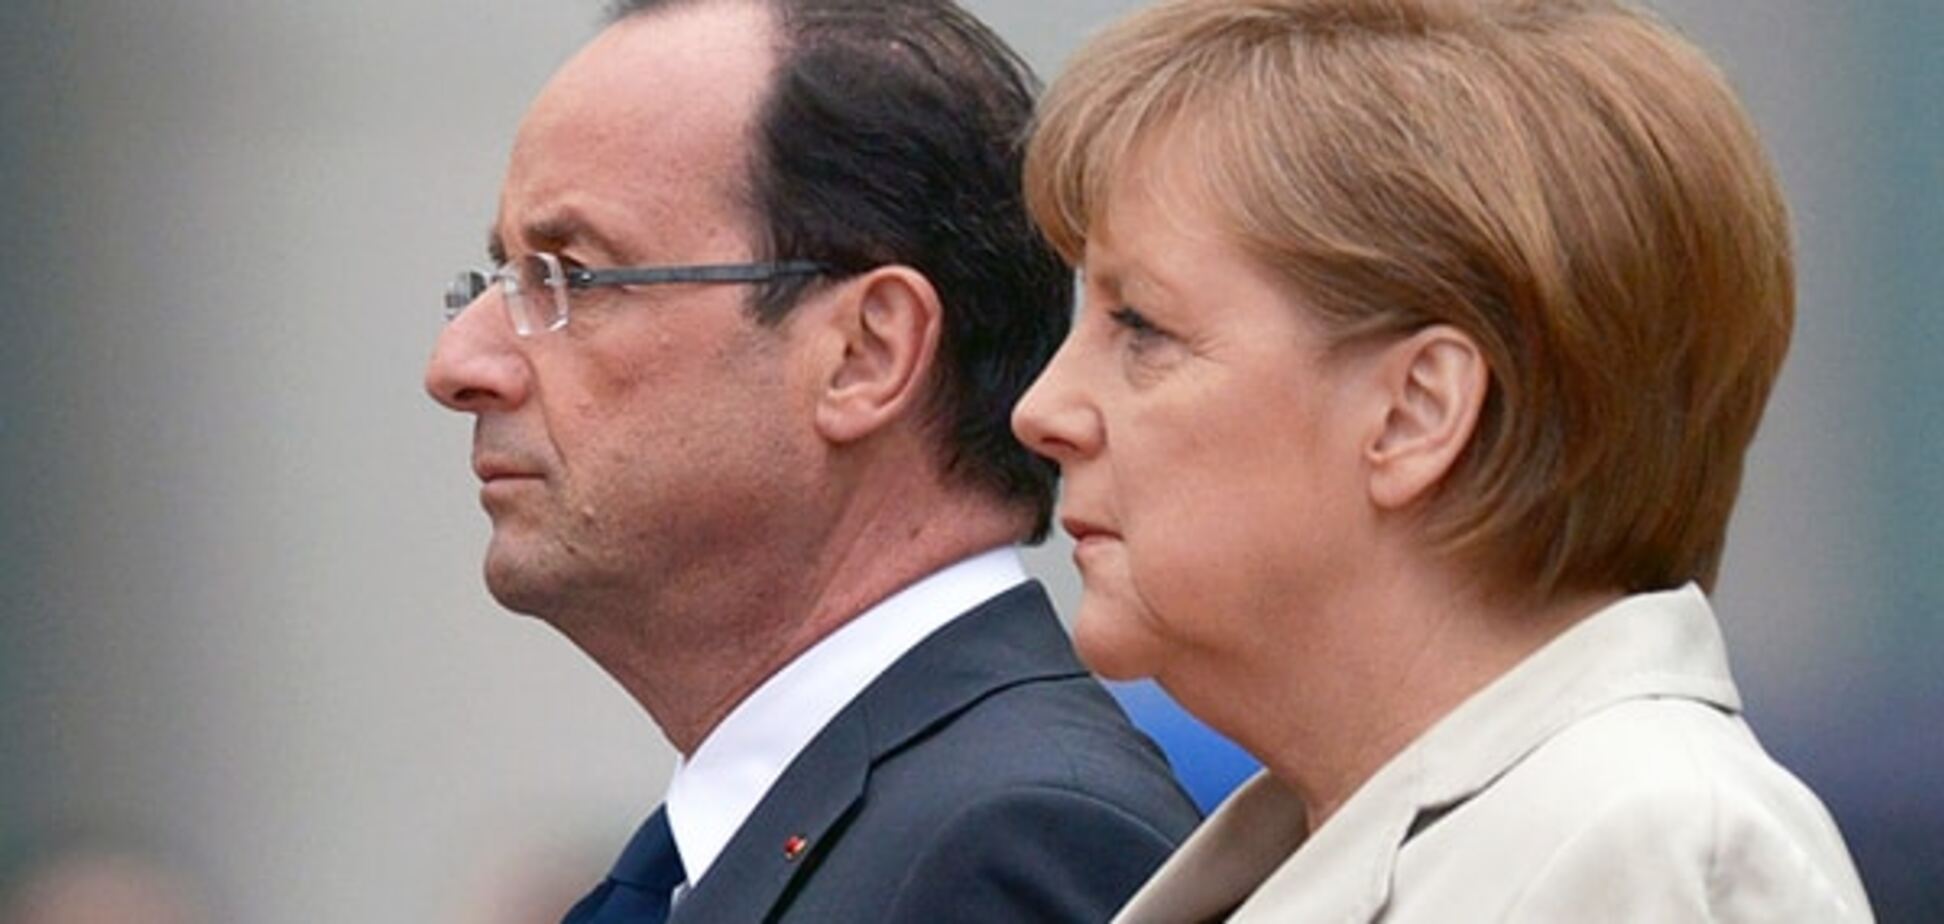 Франция и Германия хотят 'особый статус' для Донбасса прямо сейчас - СМИ